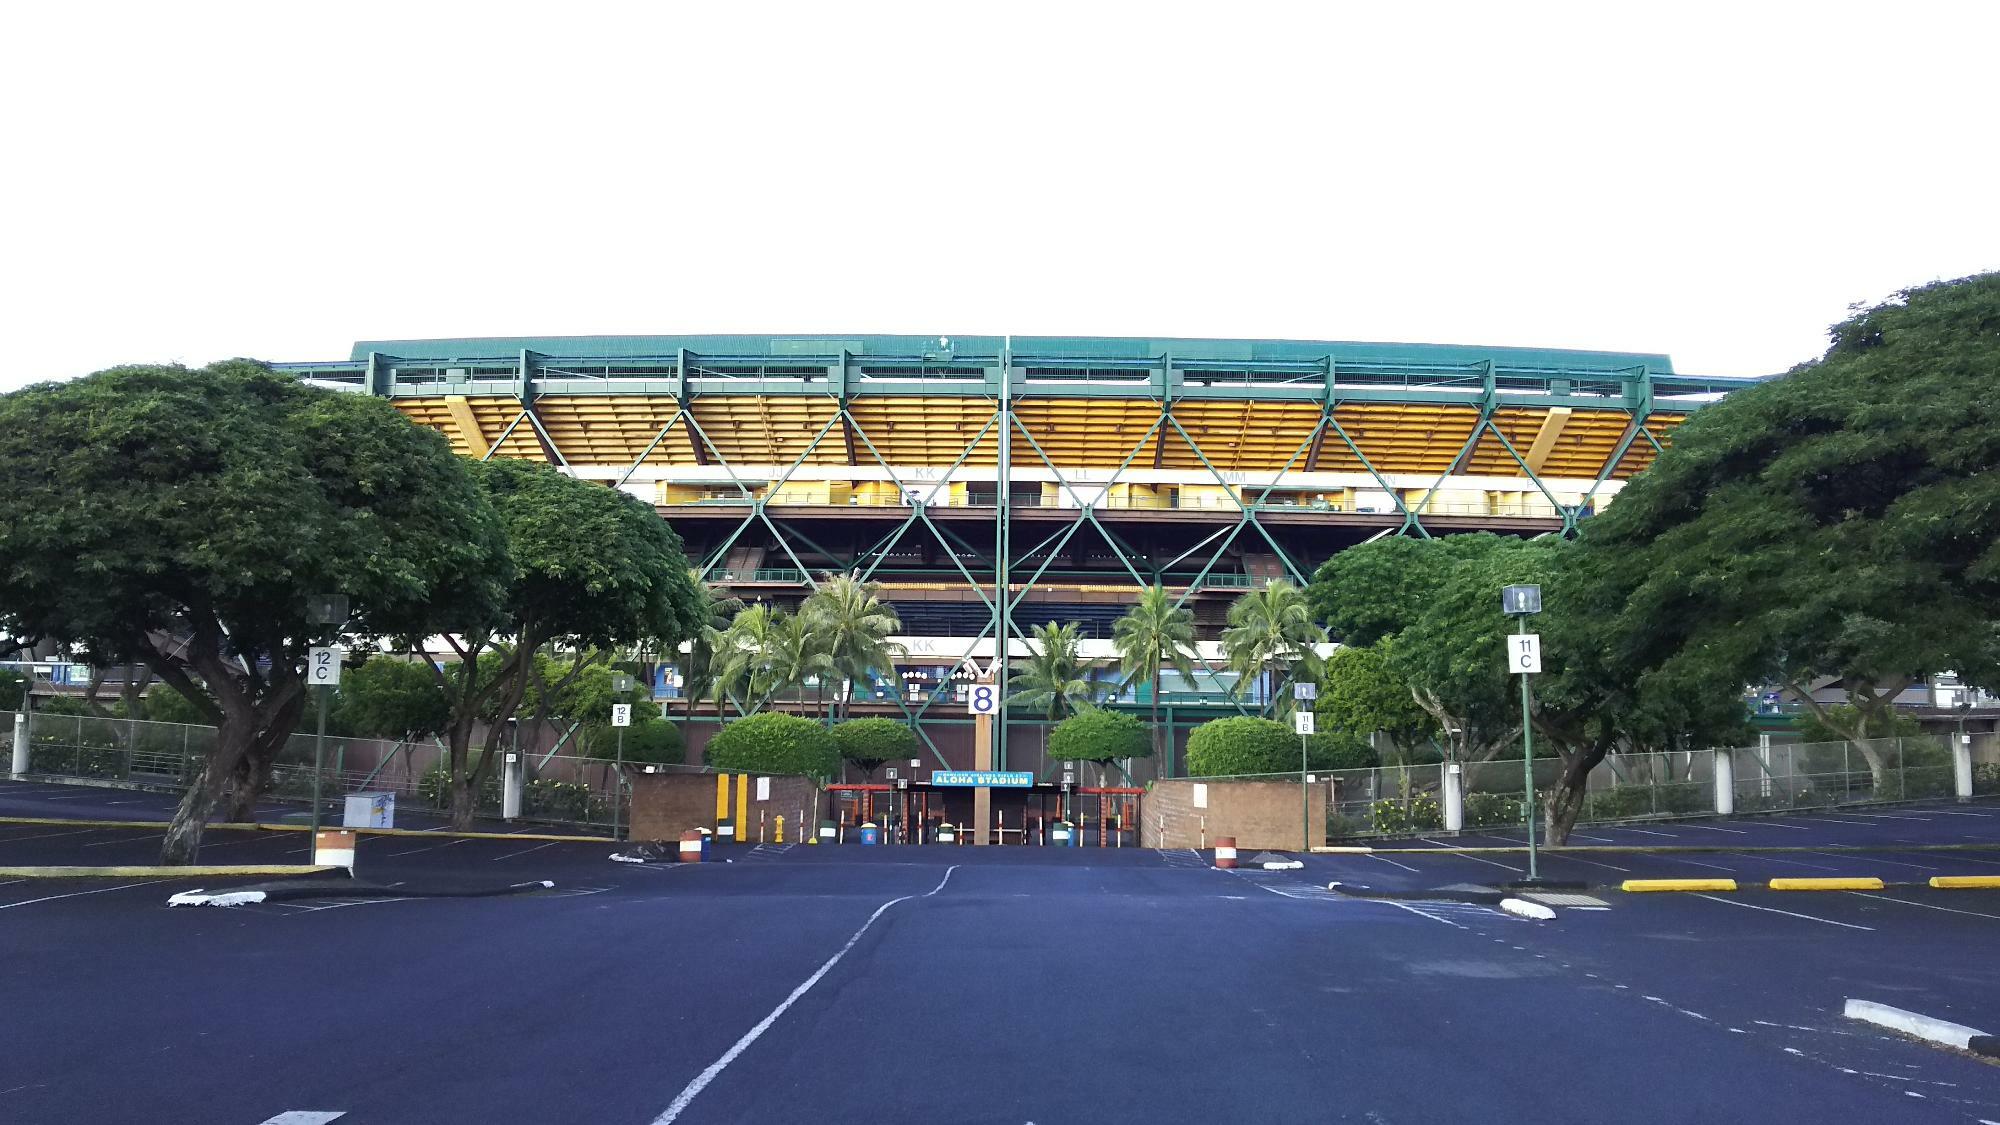 ハワイ州・オアフ島内にあるアロハスタジアム。当スタジアムは老朽化のため、2027年の完成を目指した建て替え工事が行なわれている（2015年筆者撮影）